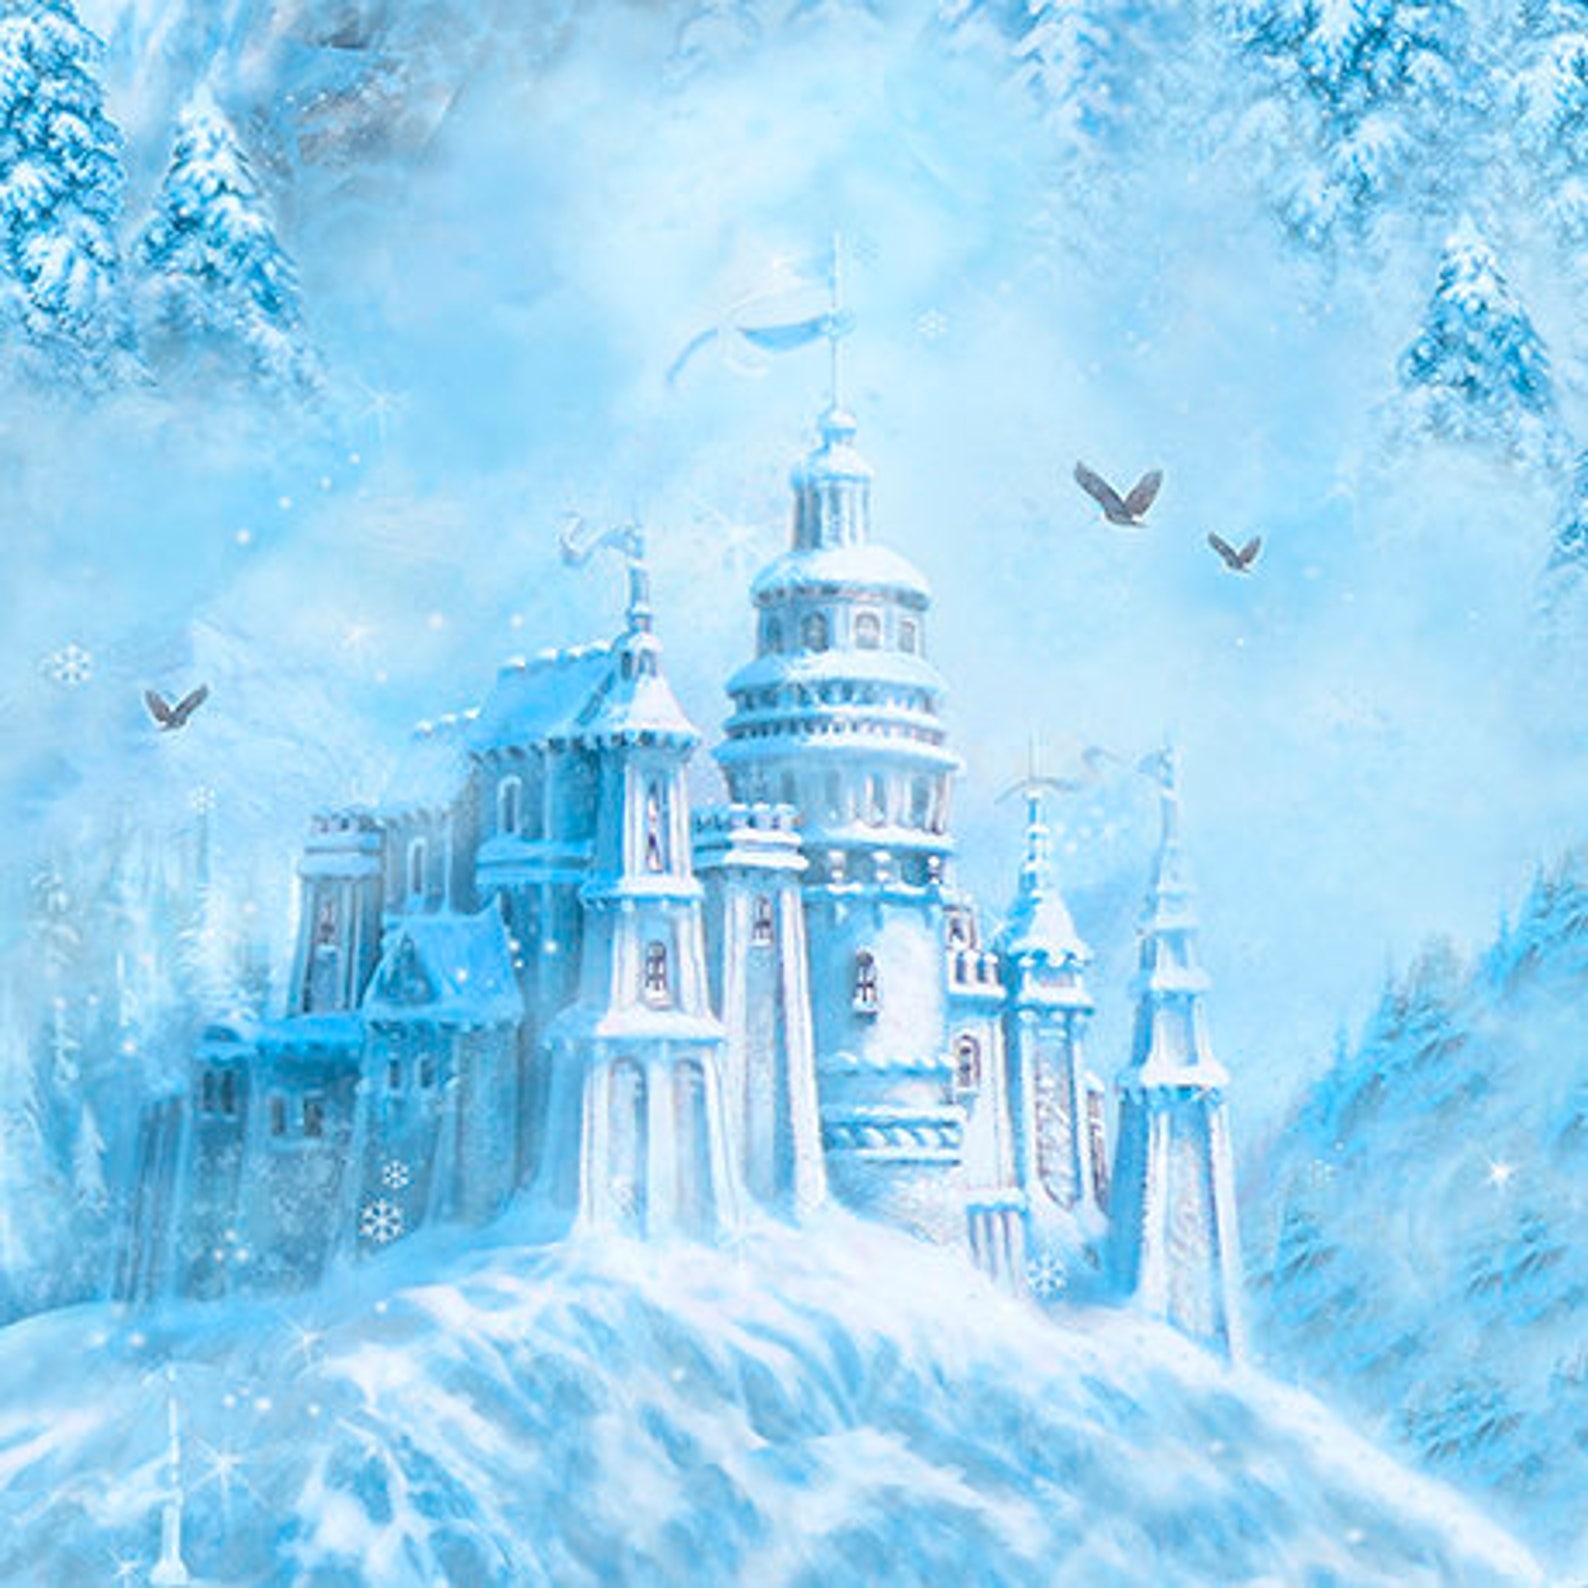 Как называется большой ледяной дворец снежной королевы. Зимний дворец снежной королевы. Ледяной замок снежной королевы. Ледяной дворец снежной королевы. Сказочный дворец снежной королевы.